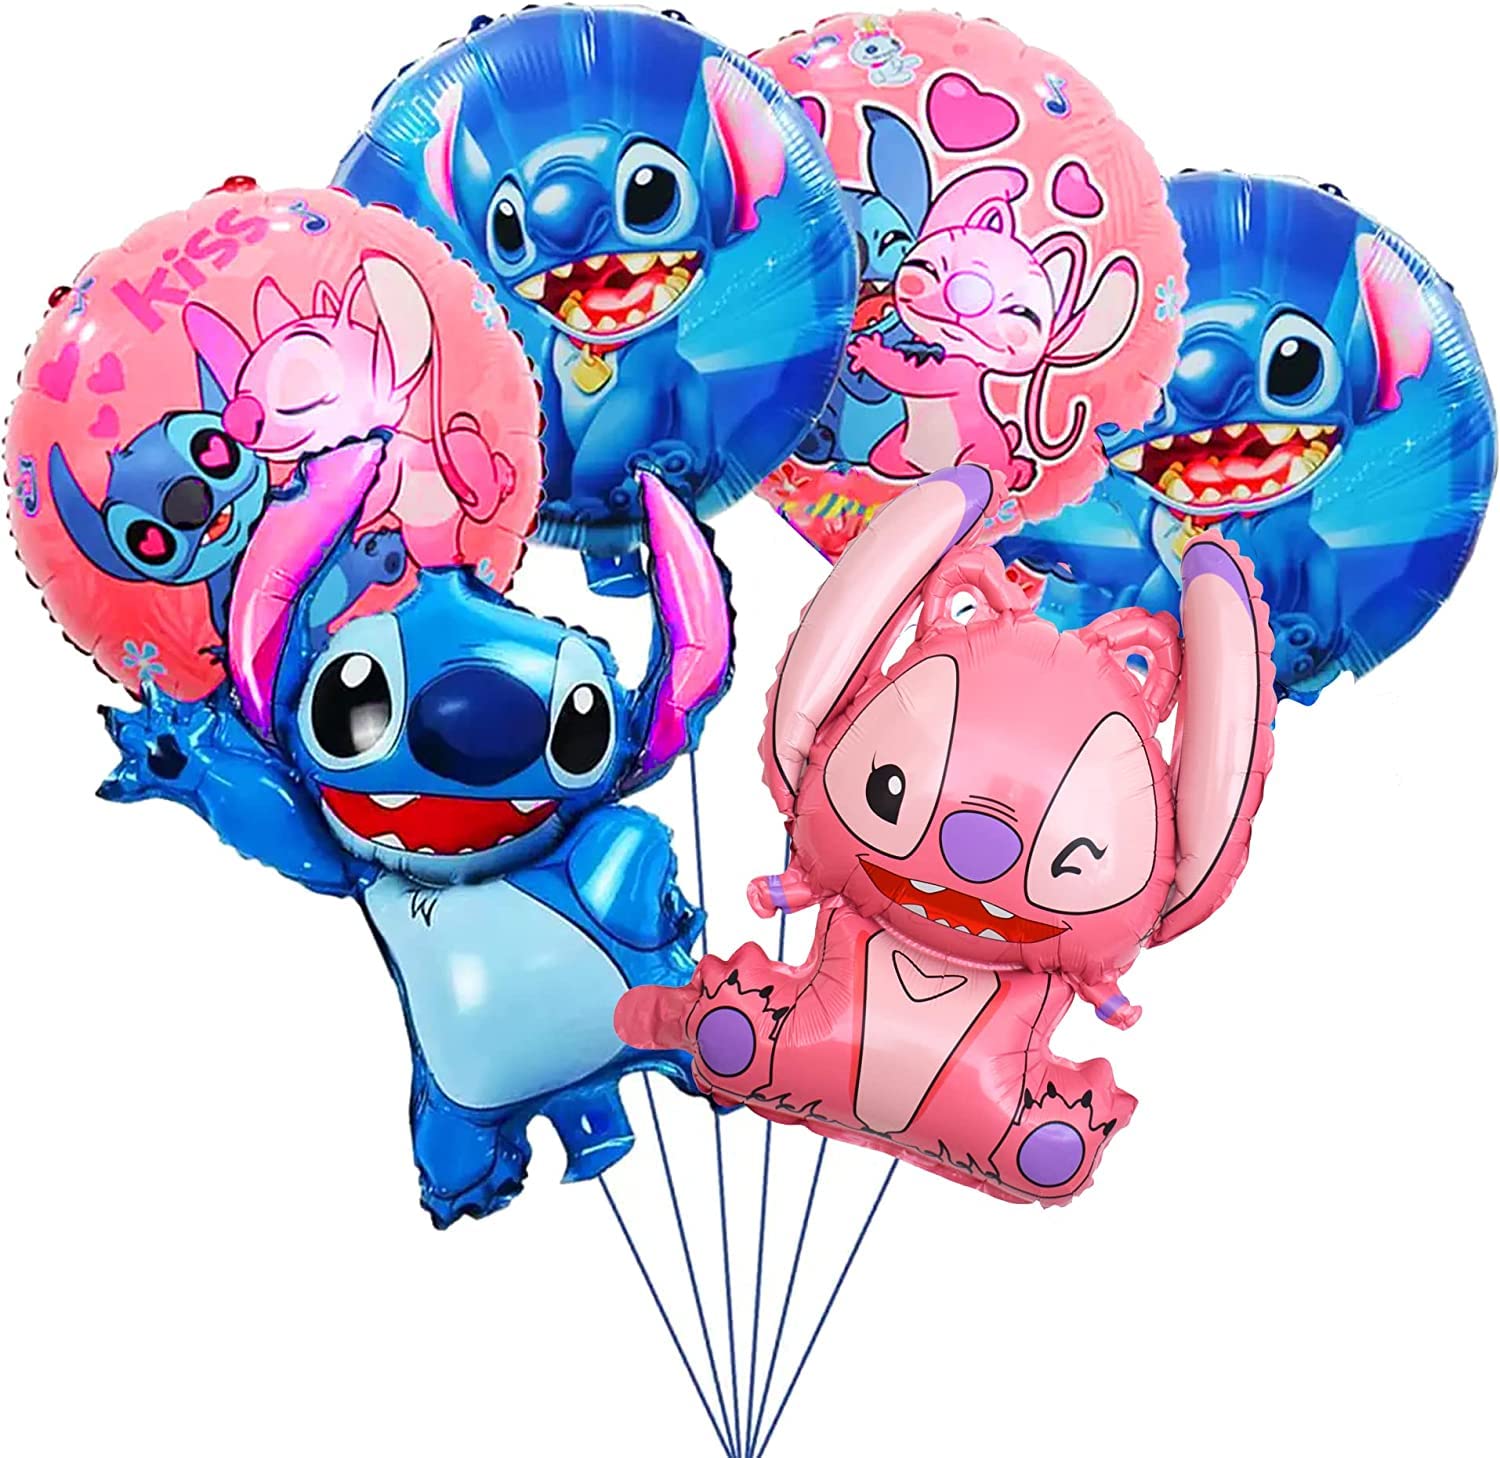 en ligne Lilo et Stitch Decoration Anniversaire, 6 PCS Ballons en Aluminium, Ballons d´anniversaire pour Enfants, Ballons de Fête Lilo et Stitch Ballons, pour Décoration de Fête (6 Pièces) rJx0dOr40 en France Online